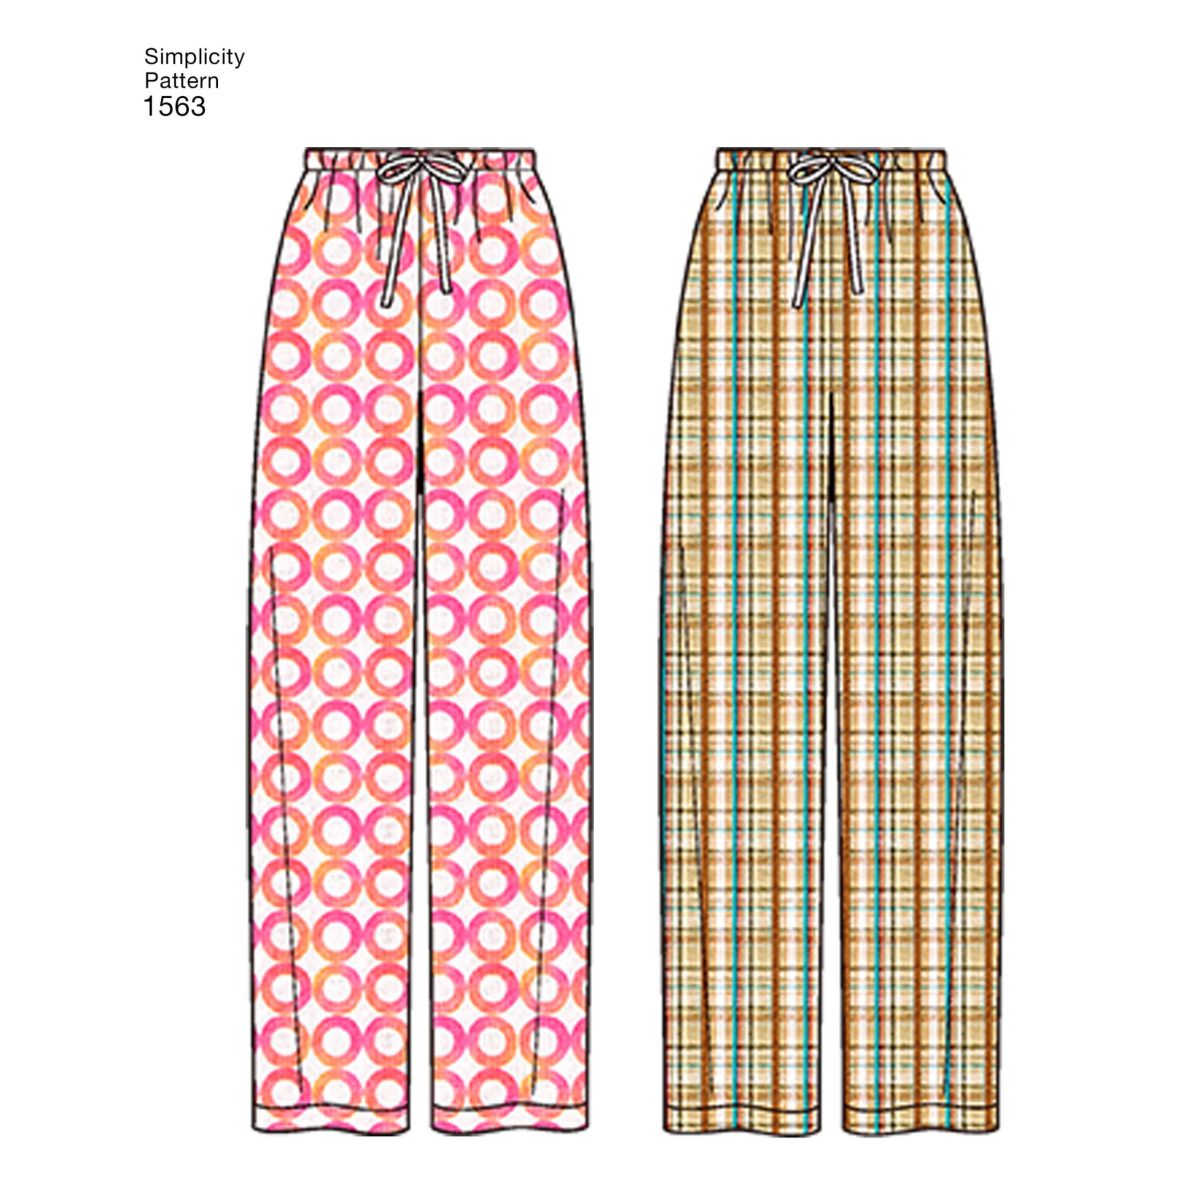 Simplicity Sewing Pattern 1563 Misses' Men's and Teens' Sleepwear